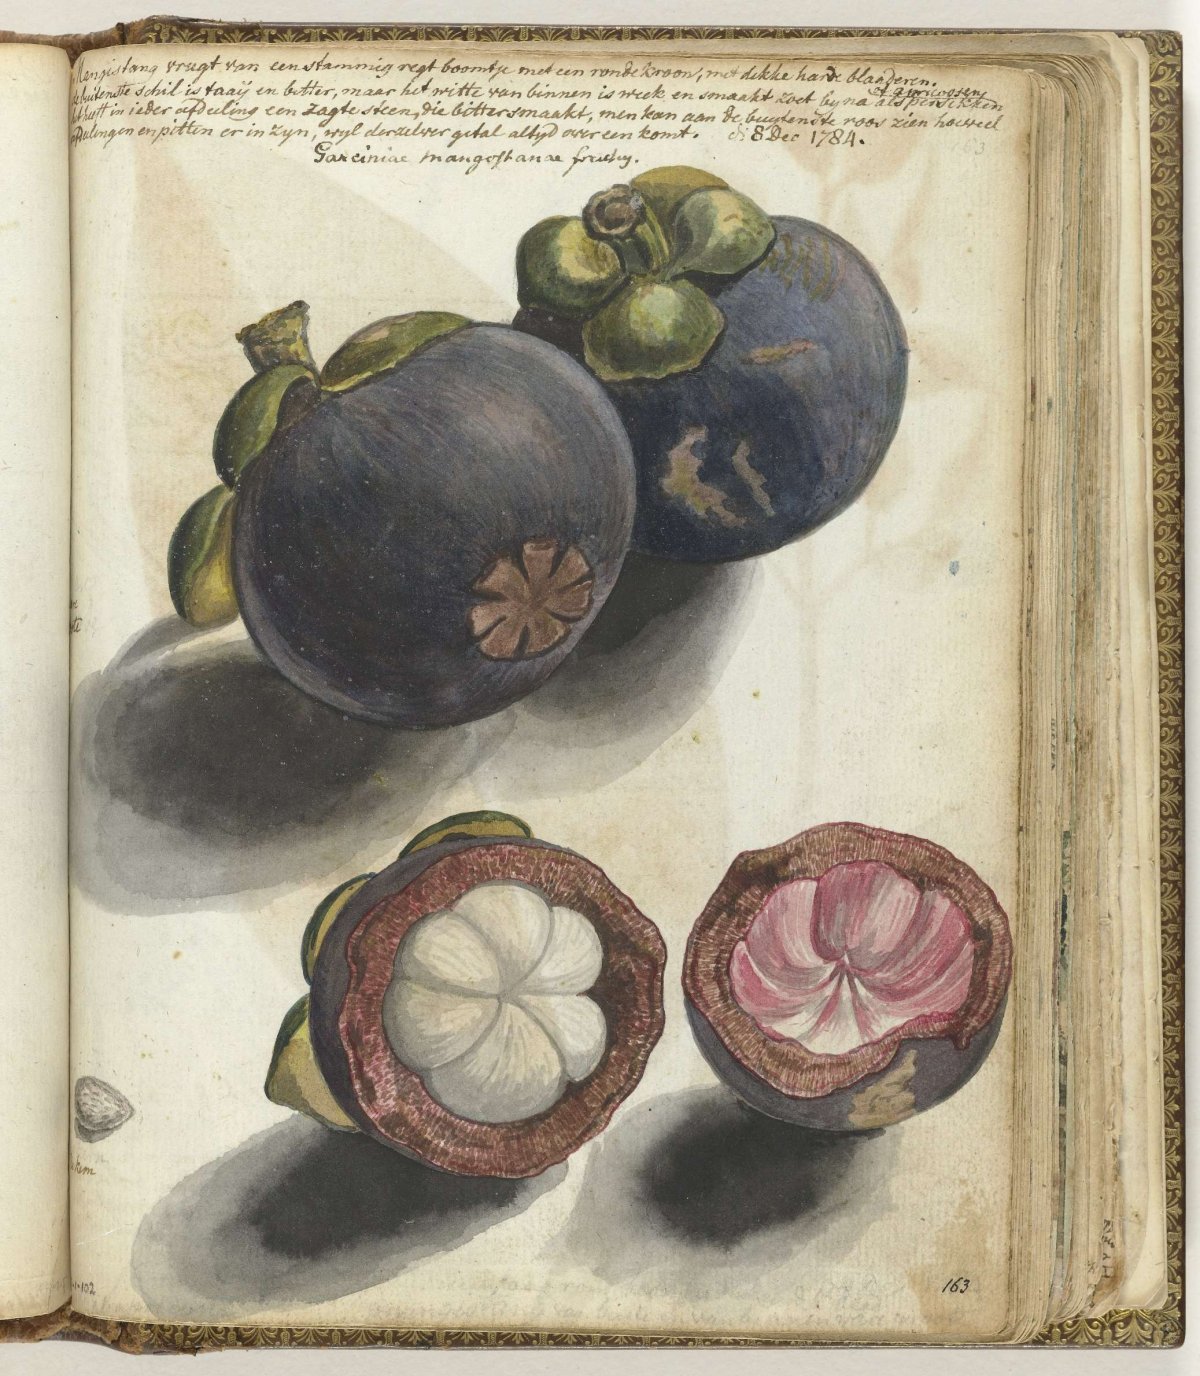 Manggistan, Jan Brandes, 1784